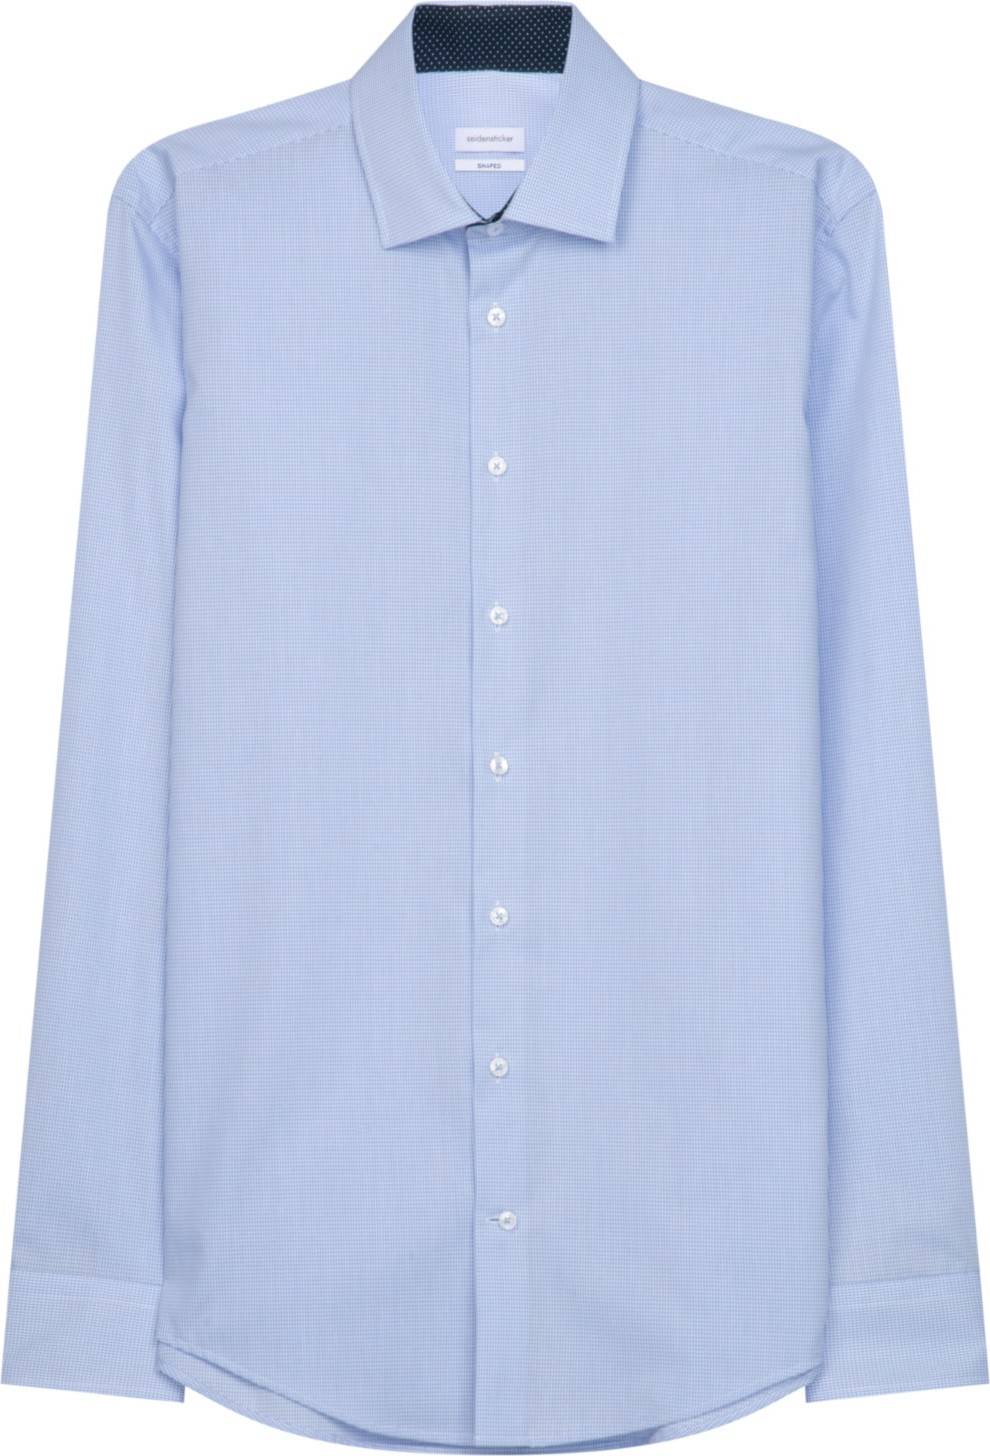 SEIDENSTICKER Společenská košile nebeská modř / světlemodrá